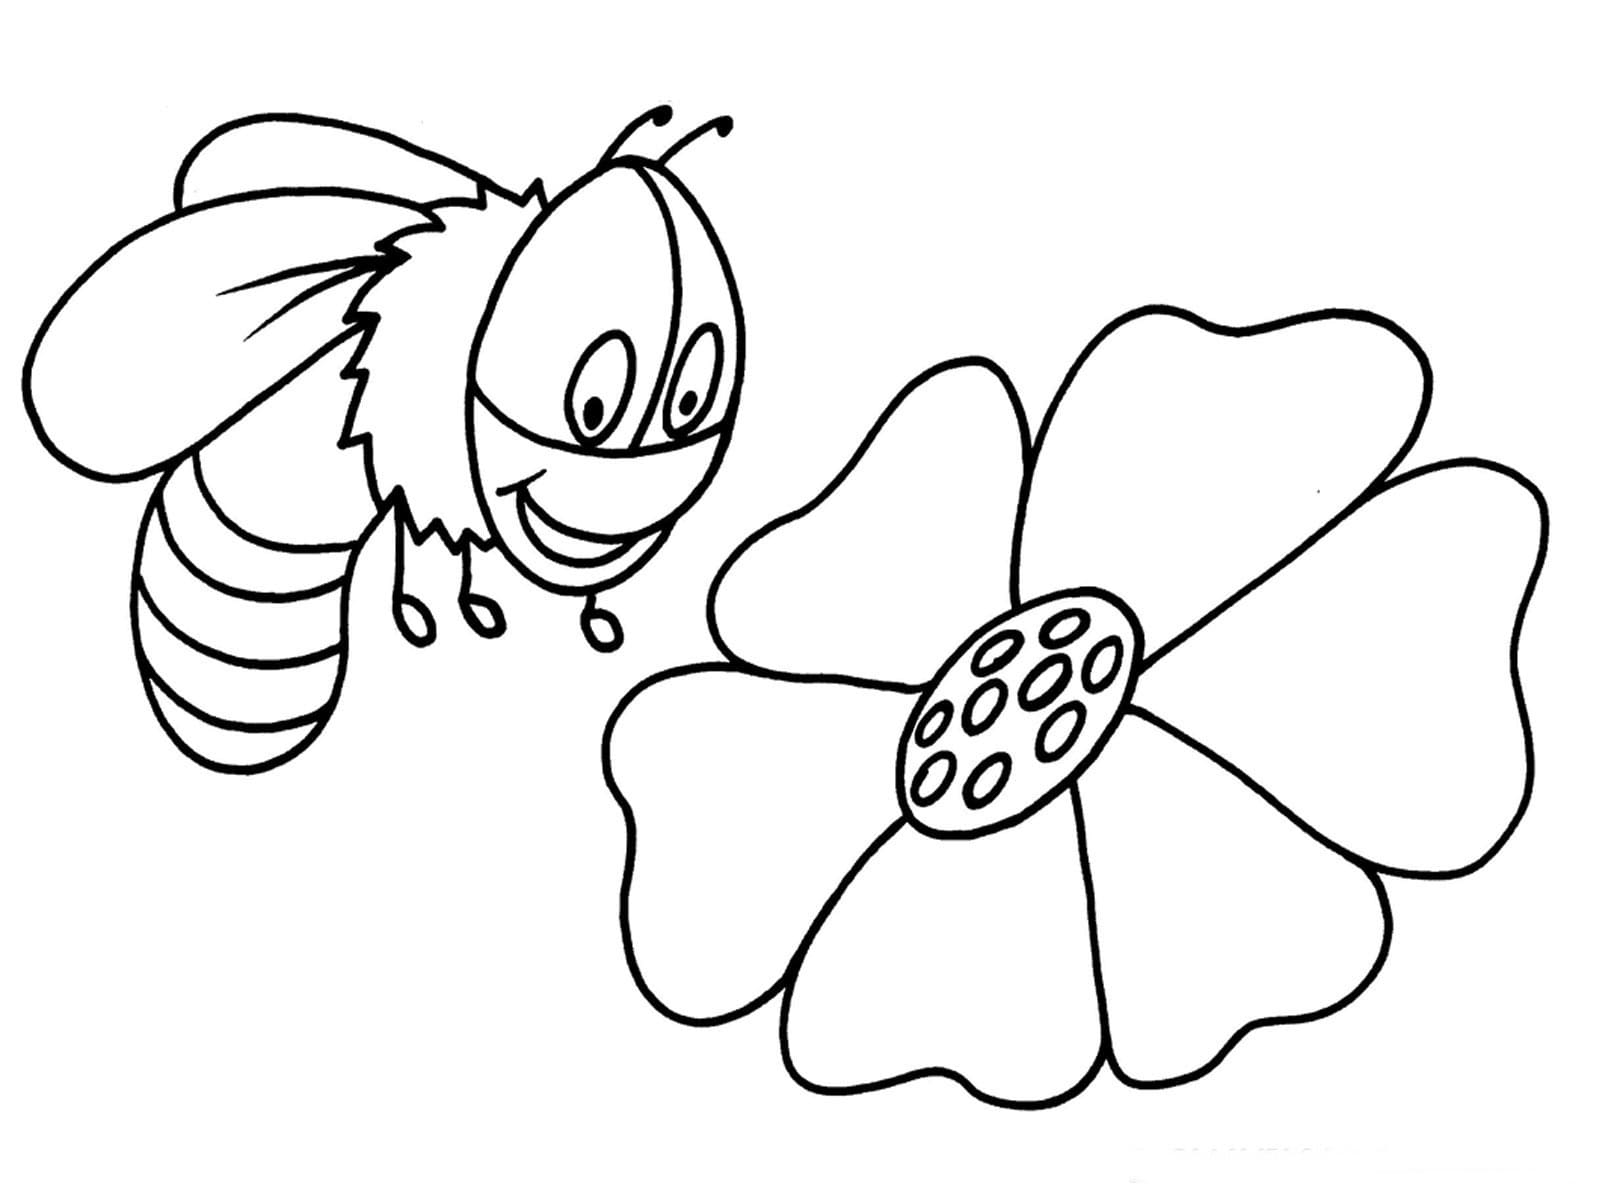 재미있는 벌과 꽃 coloring page